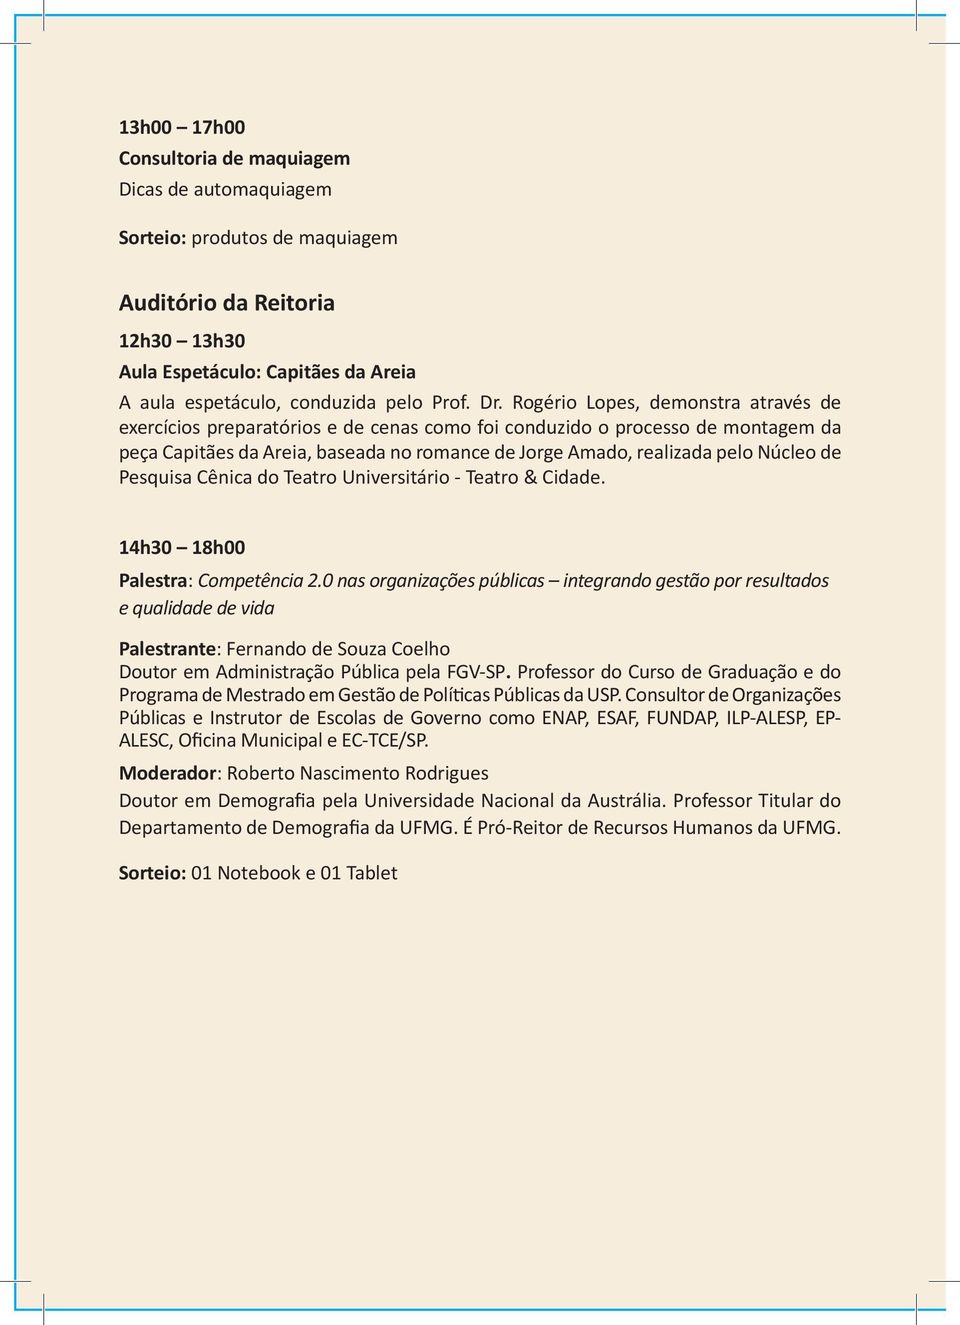 Núcleo de Pesquisa Cênica do Teatro Universitário - Teatro & Cidade. 14h30 18h00 Palestra: Competência 2.